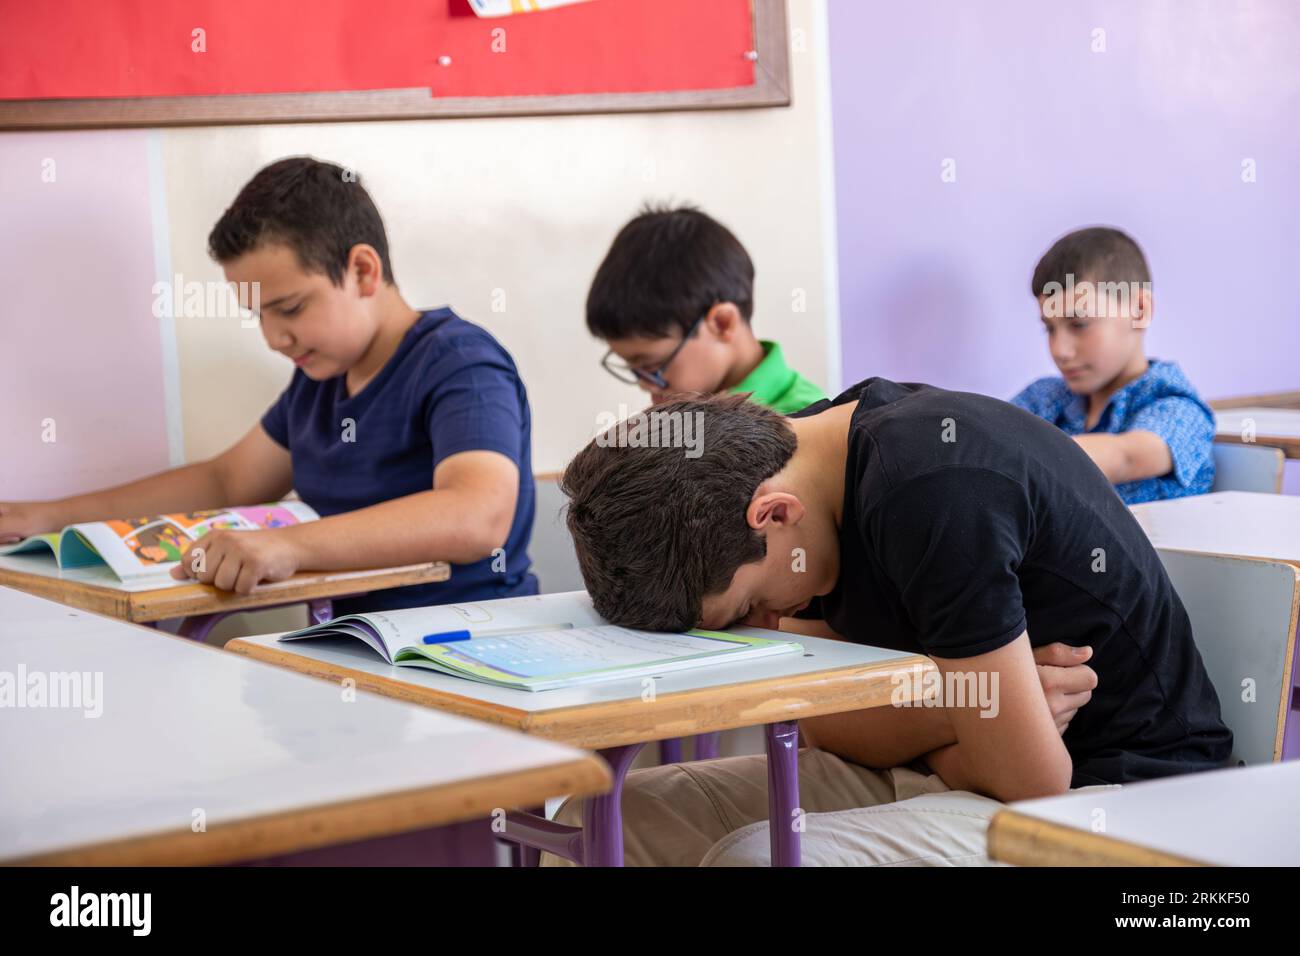 Uno studente che mette la testa sulla scrivania, sembra non sentirsi bene o non dormire Foto Stock